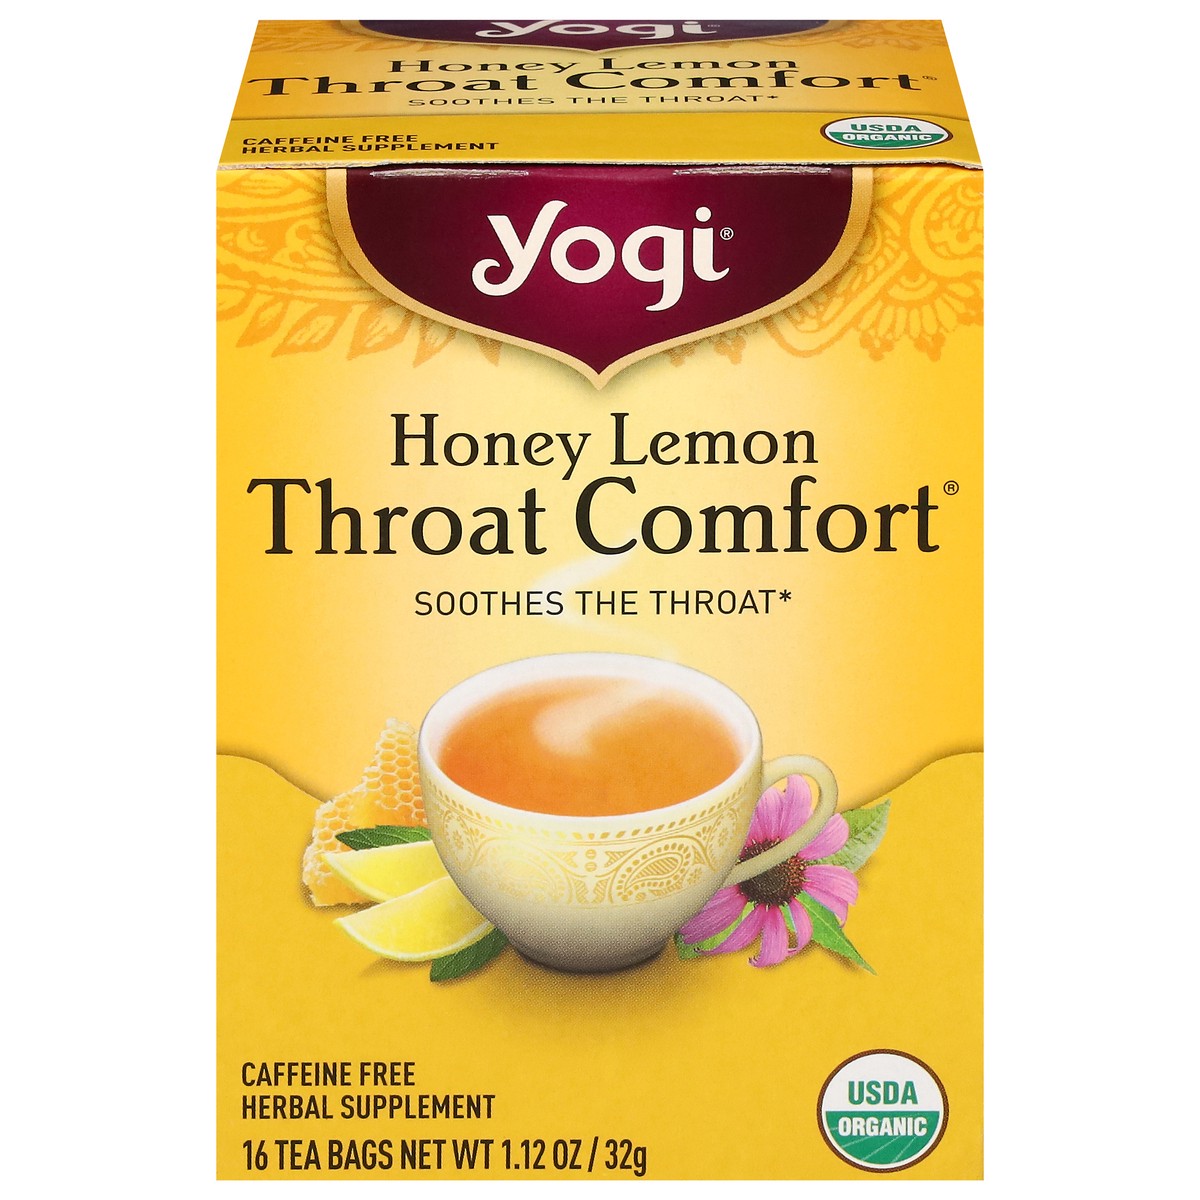 slide 1 of 9, Yogi Throat Comfort Honey Lemon Herbal Tea 16 Tea Bags, 16 ct